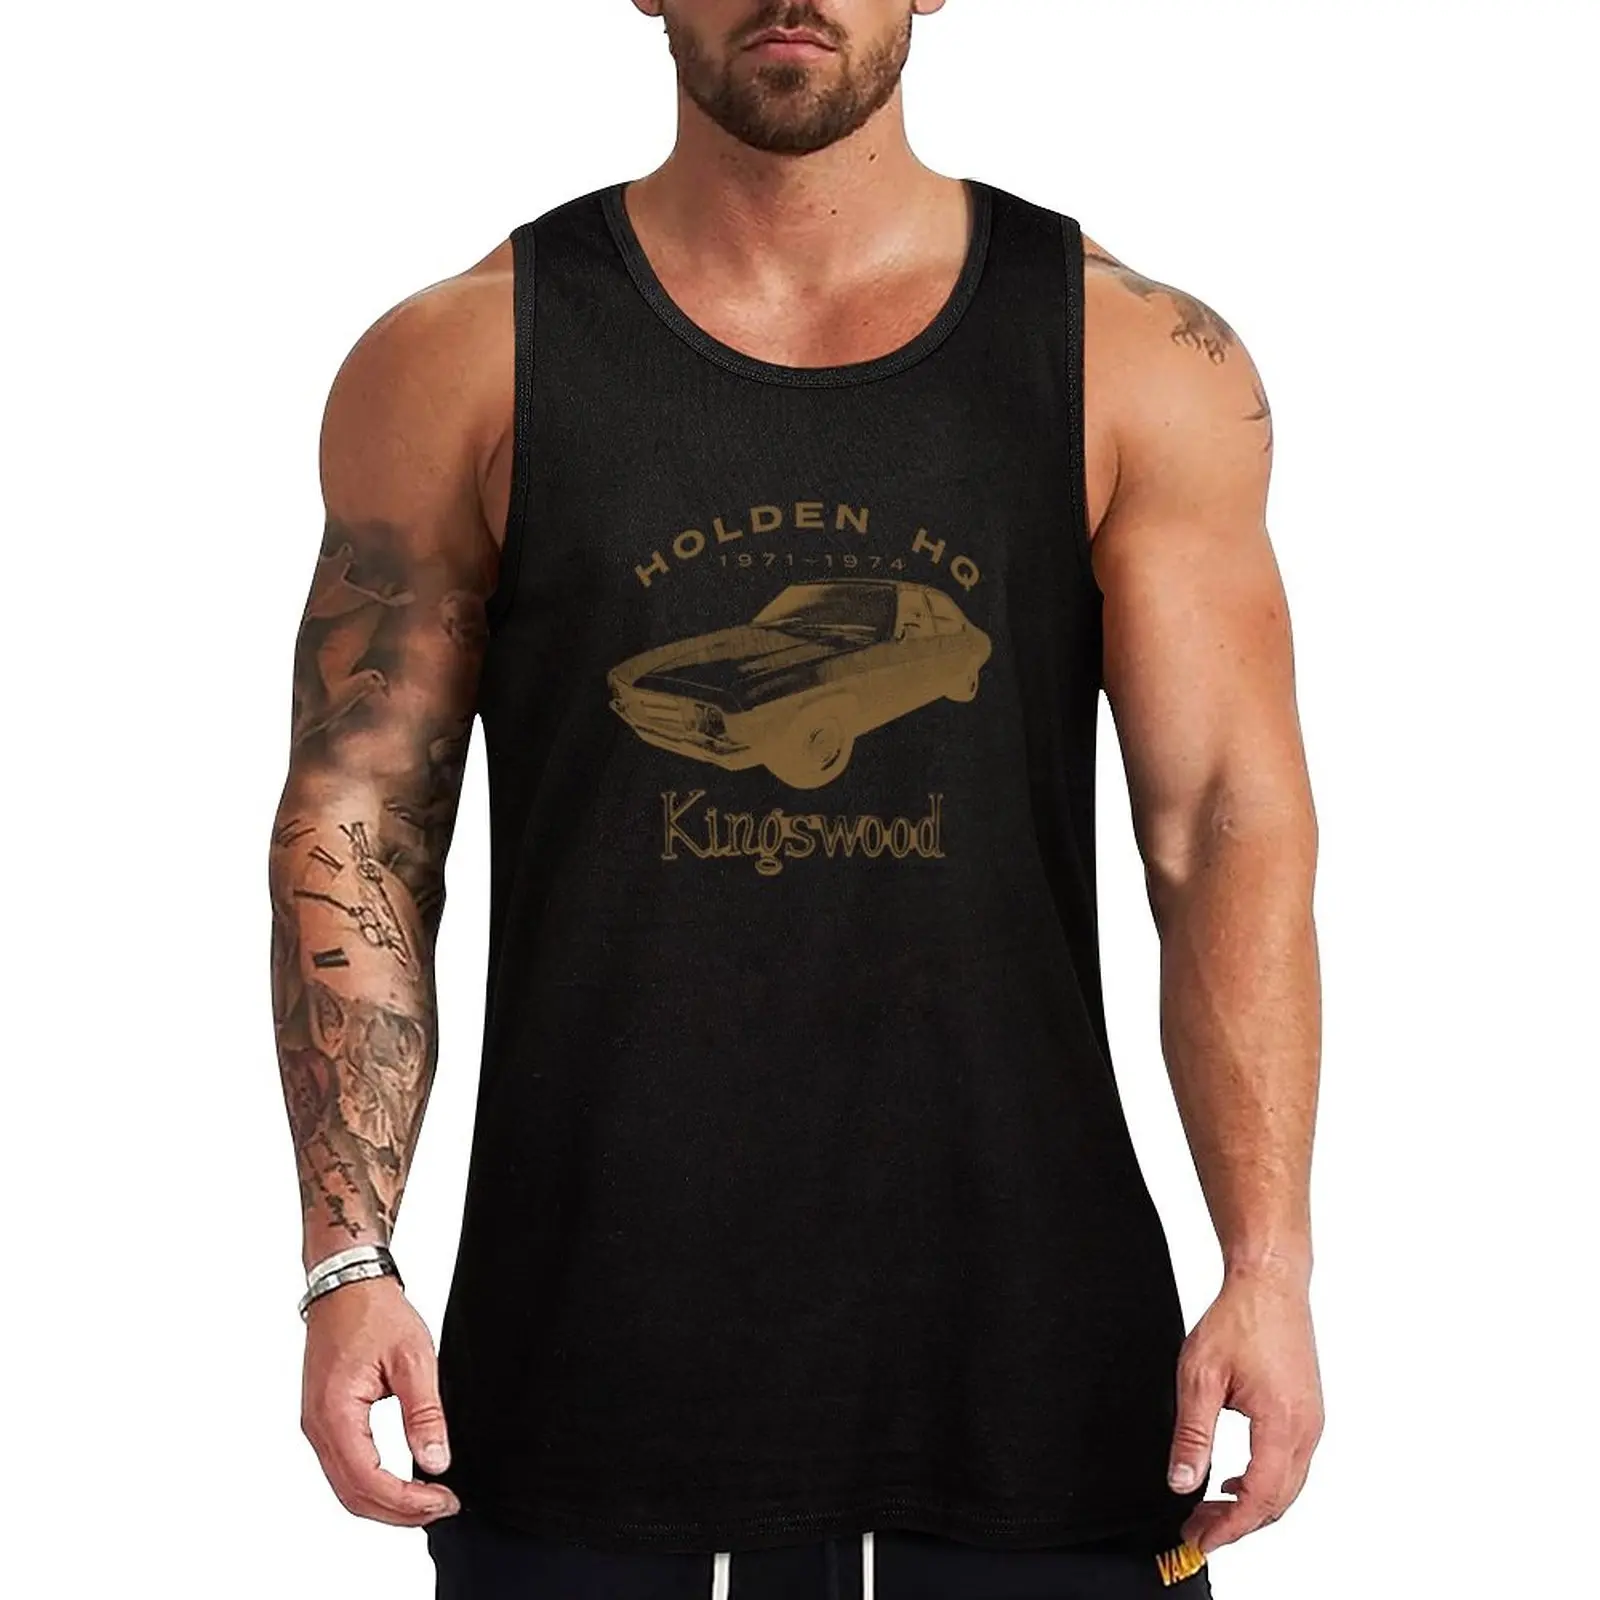 Yeni Holden HQ Kingswood Tank Top kas t-shirt sevimli üstleri Yelek erkek . ' - ' . 0